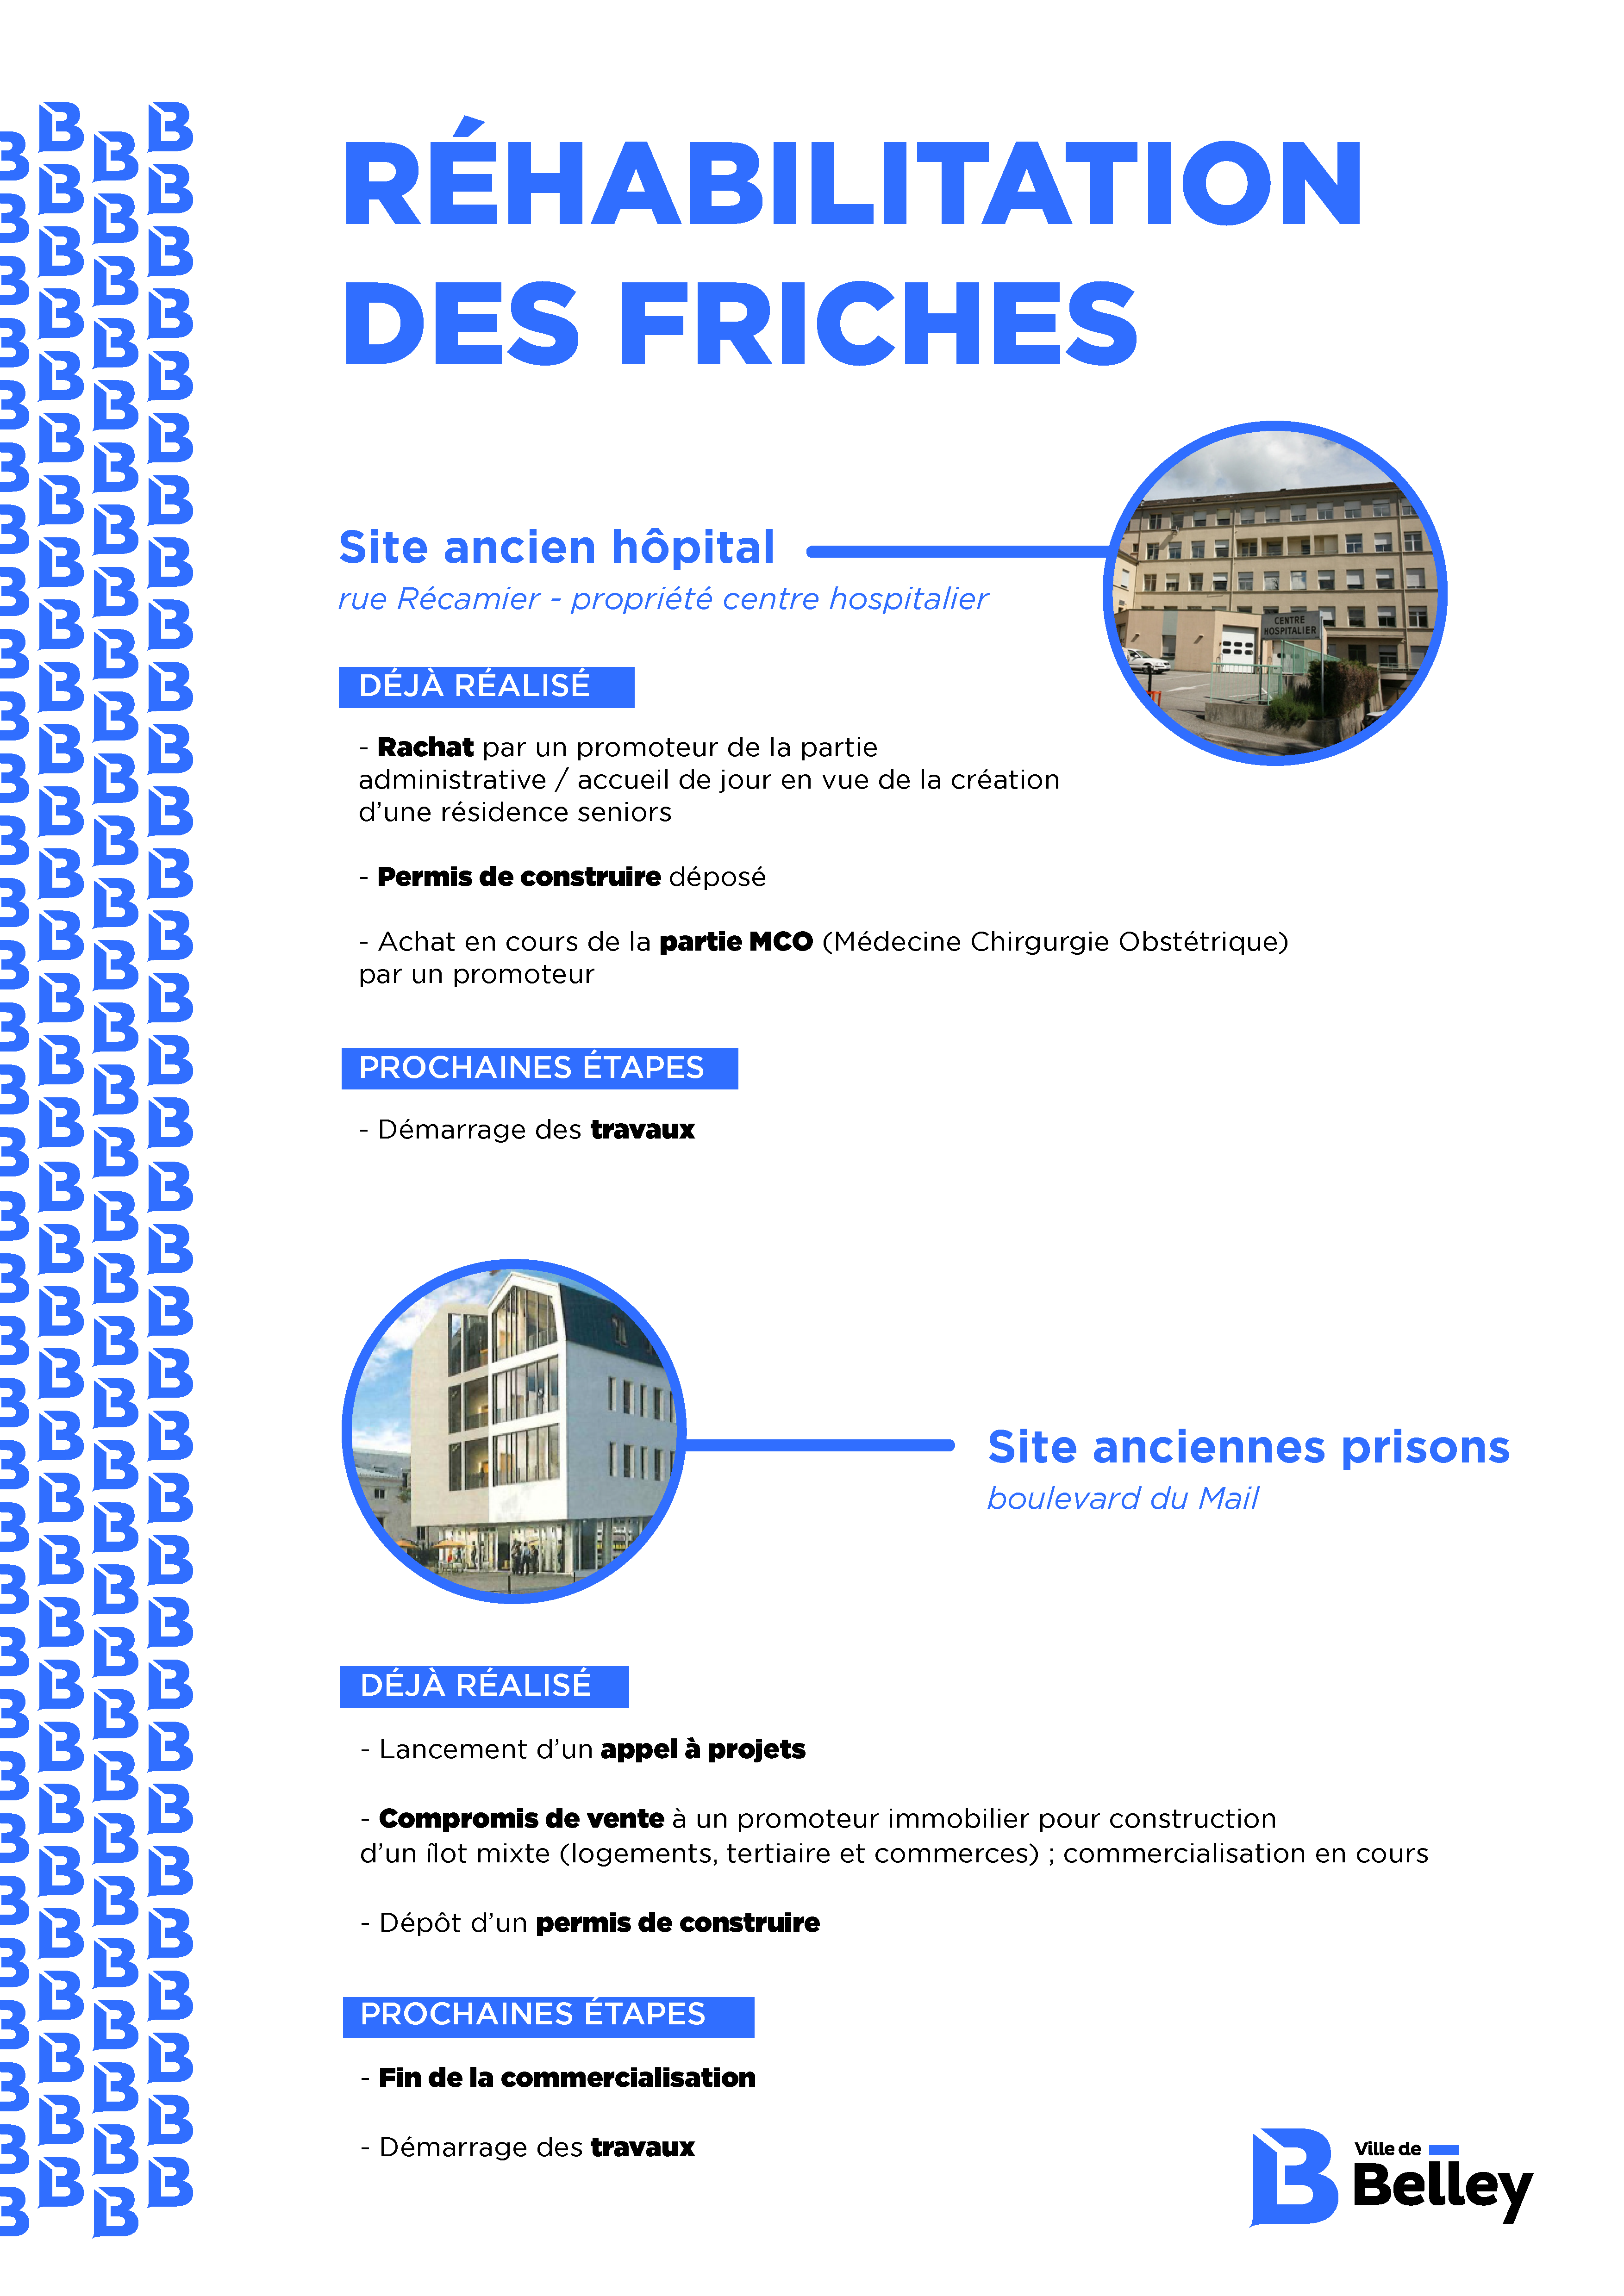 Réactualisation de devanture pour La Boulangerie Le Chalet - Atelier de  création de signalétique professionnelle près de Lyon - Pretext Infographie